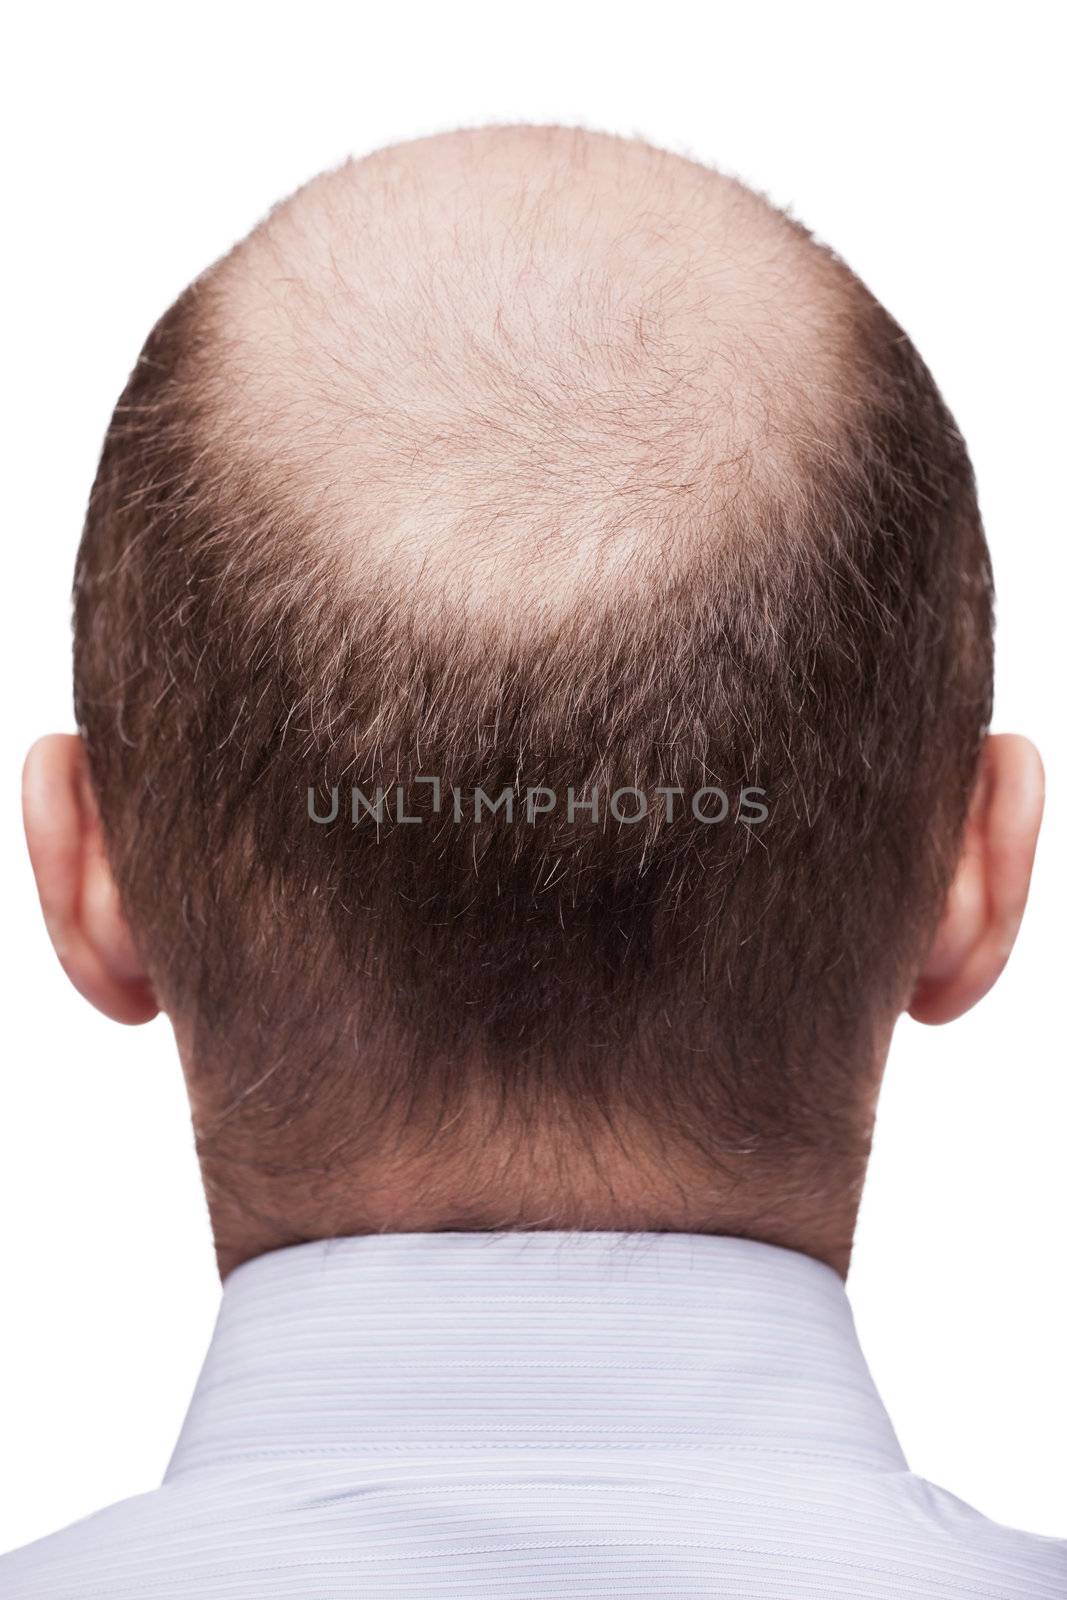 Bald man head by ia_64